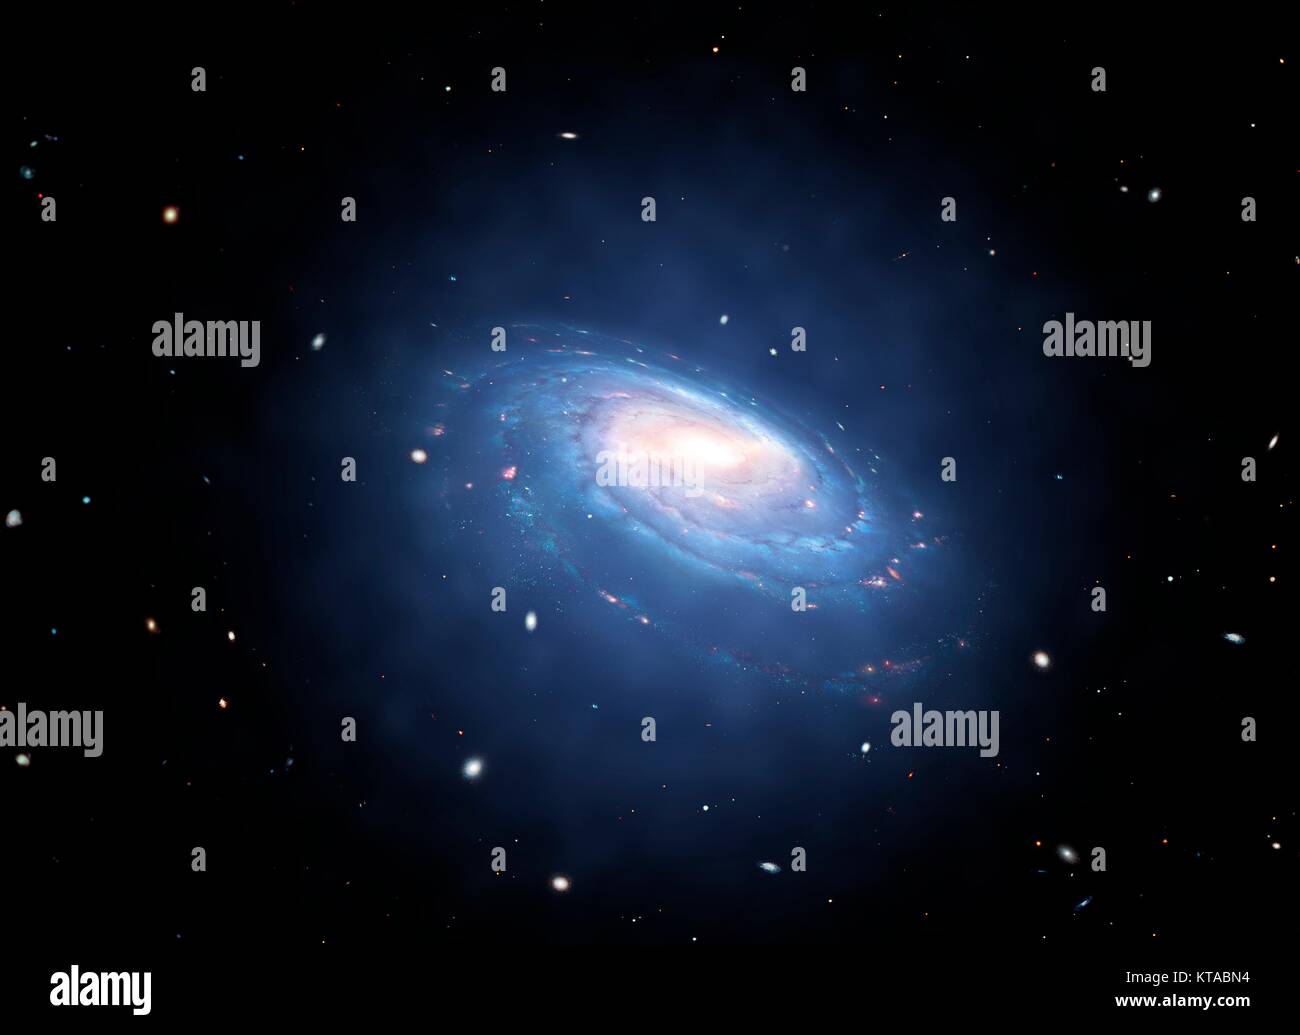 Galaxy e associati materia oscura halo. Una materia oscura alo è un presunto componente galaxy che enshrouds il disco galattico e si estende ben oltre il bordo della galassia visibile. La sua massa domina la massa totale del sistema Galaxy. Presumibilmente costituito di materia oscura, aloni non possono essere osservate direttamente, ma la loro esistenza è dedotta attraverso i loro effetti sui movimenti delle stelle e del gas nelle galassie. Foto Stock